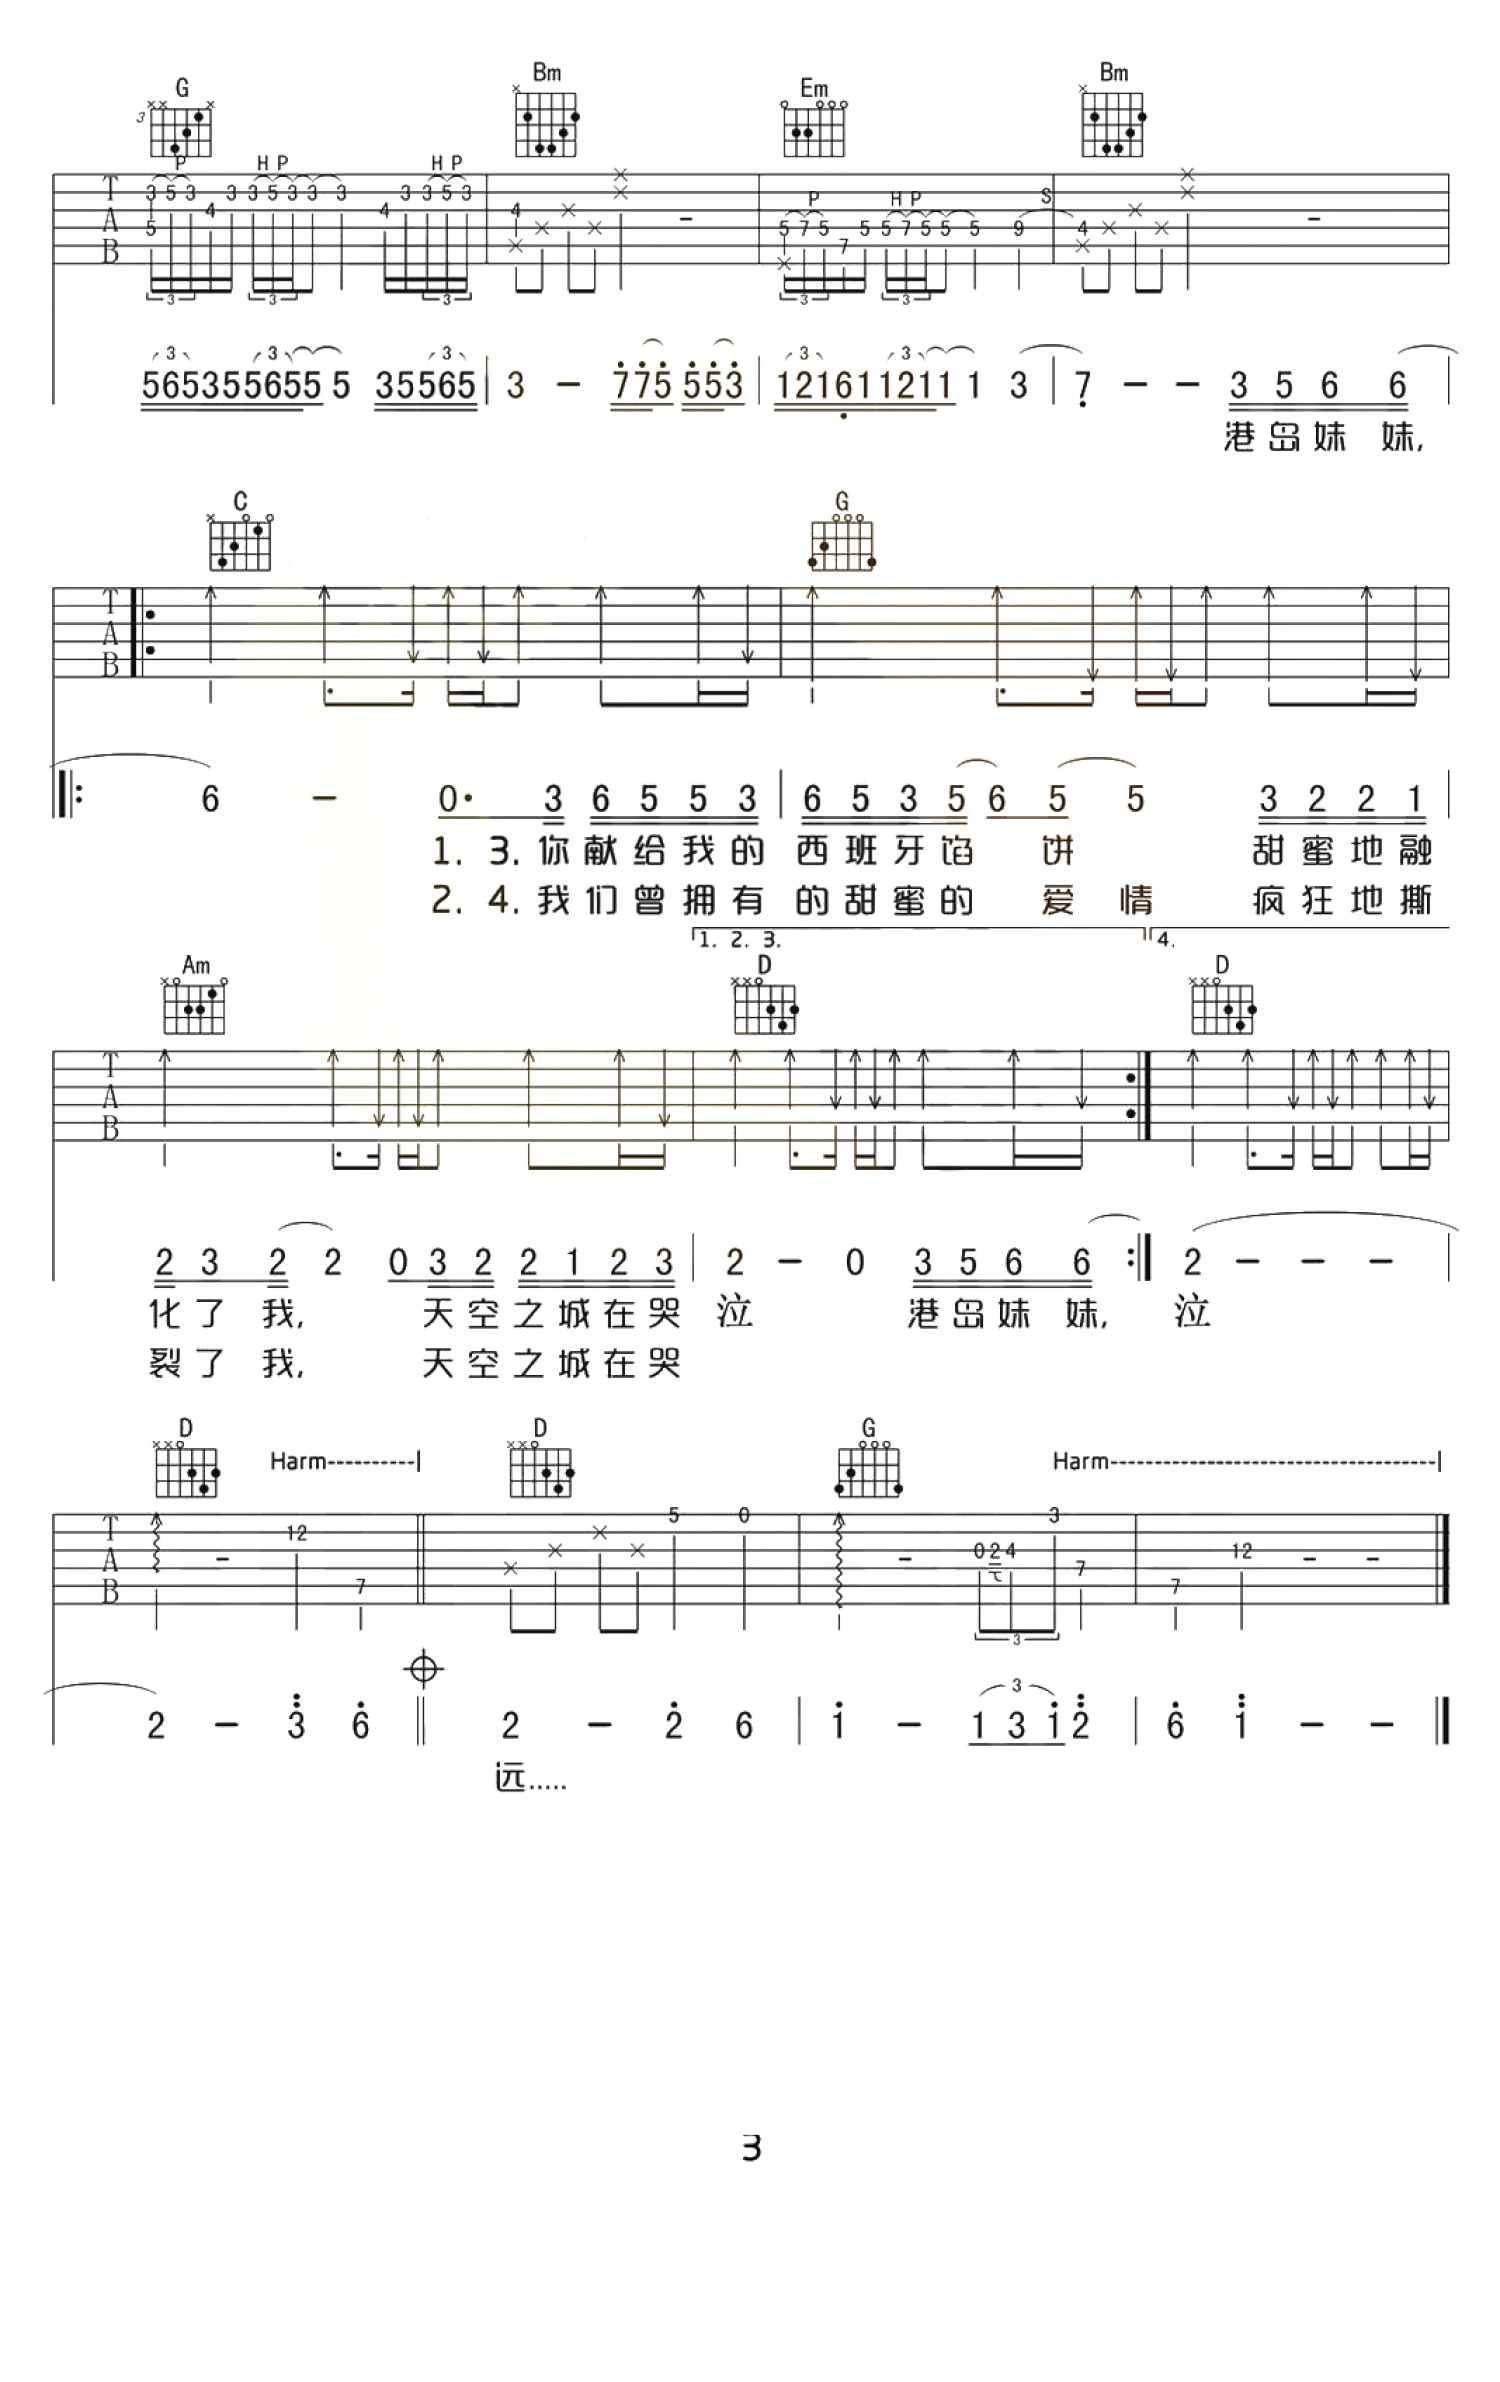 天空之城吉他谱 - 张俊文 - 电吉他谱 - 琴谱网